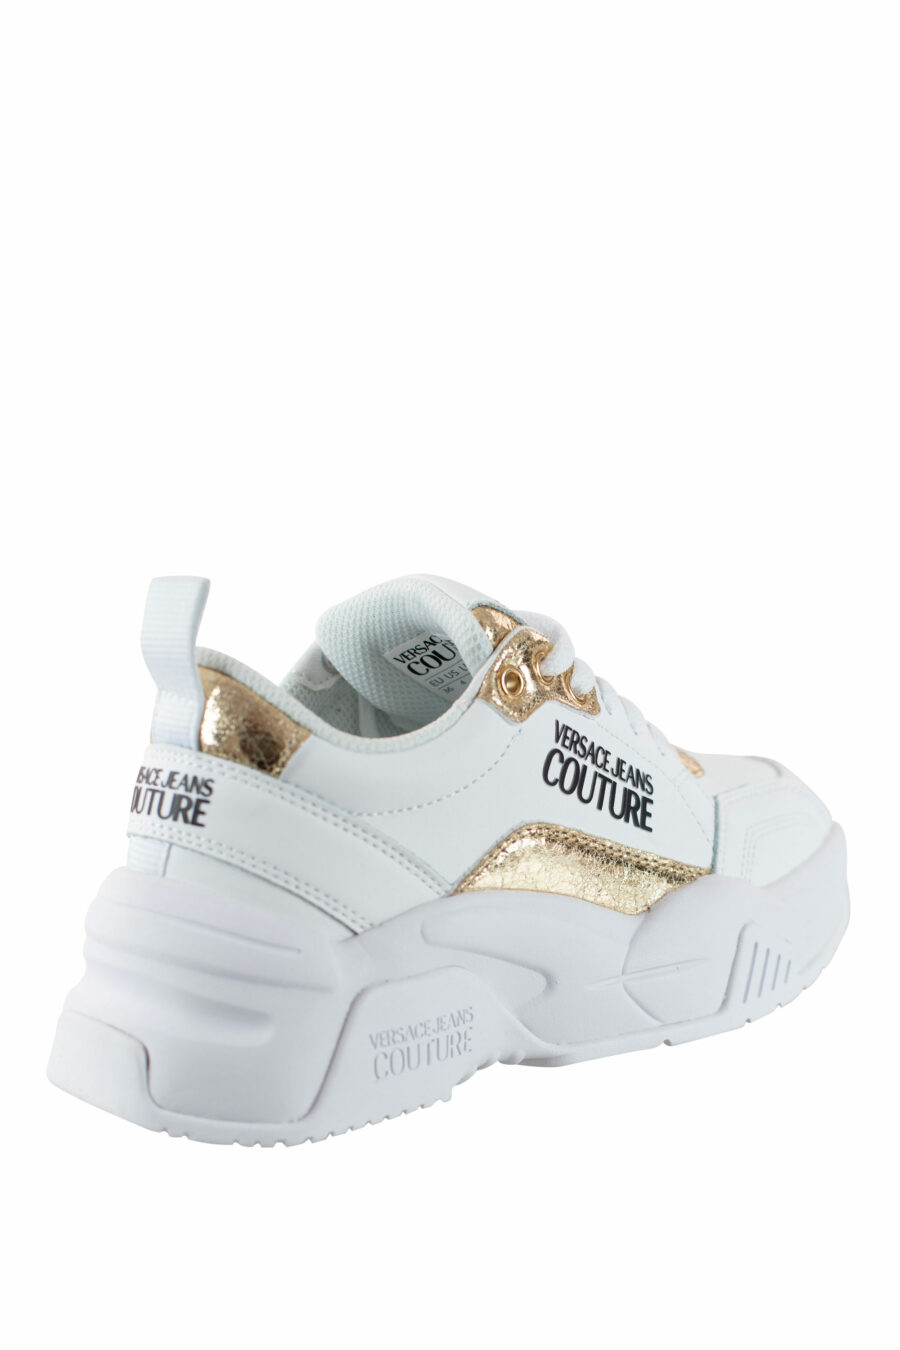 Zapatillas blancas con dorado "stargaze" - IMG 4499